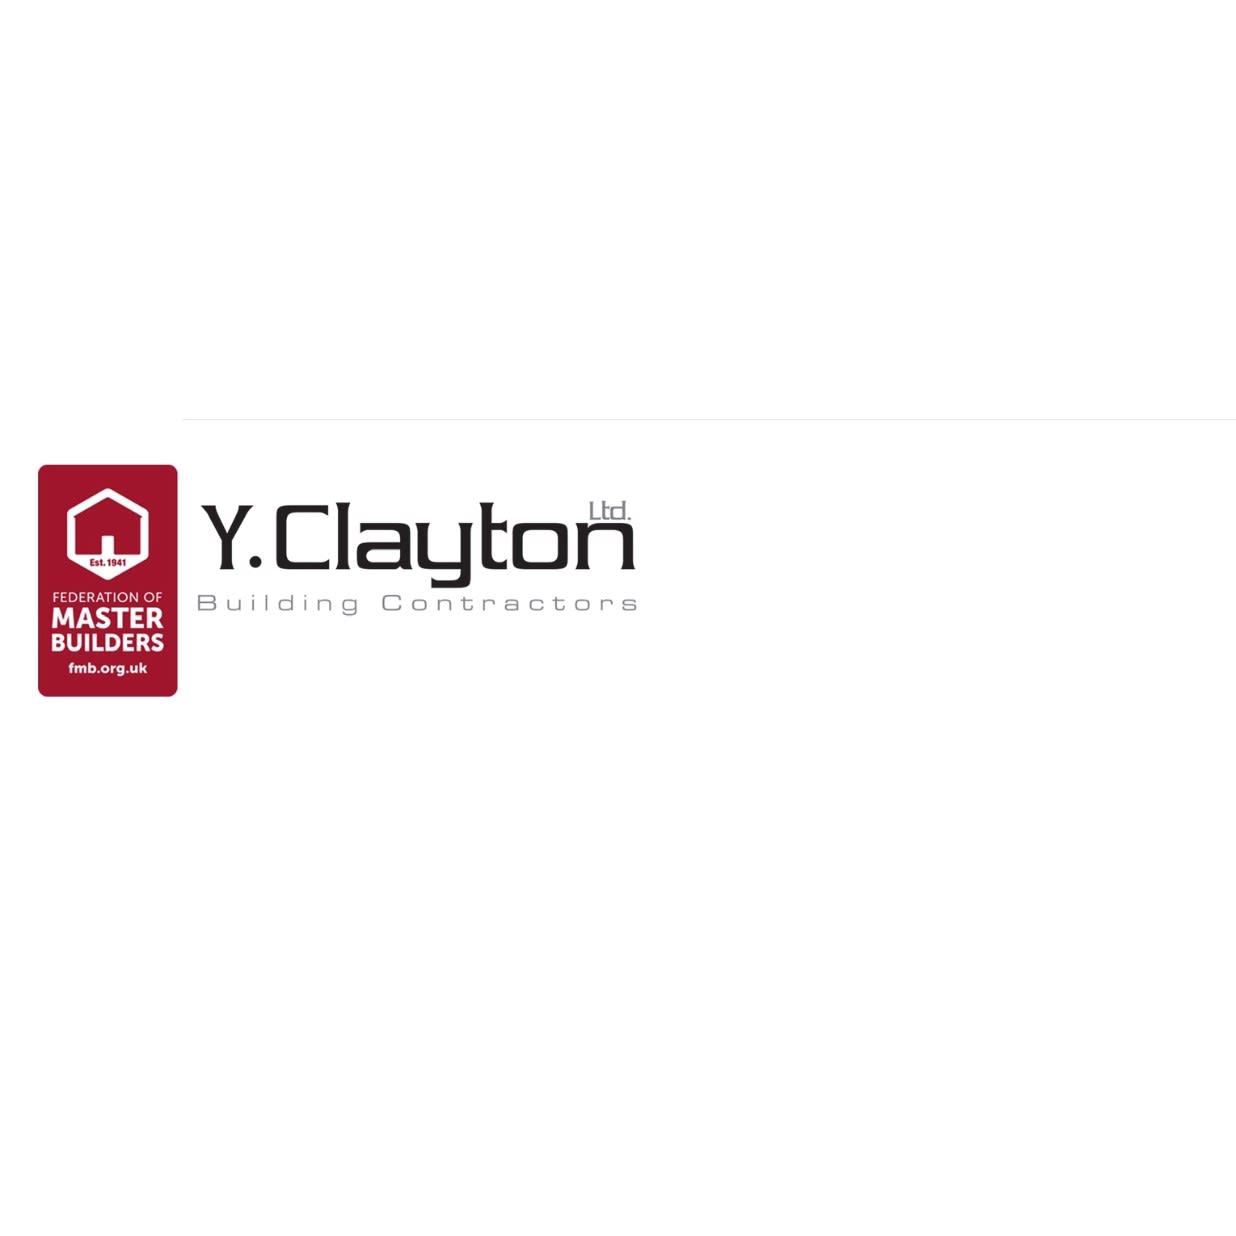 Y. Clayton Building Contractors Ltd Logo